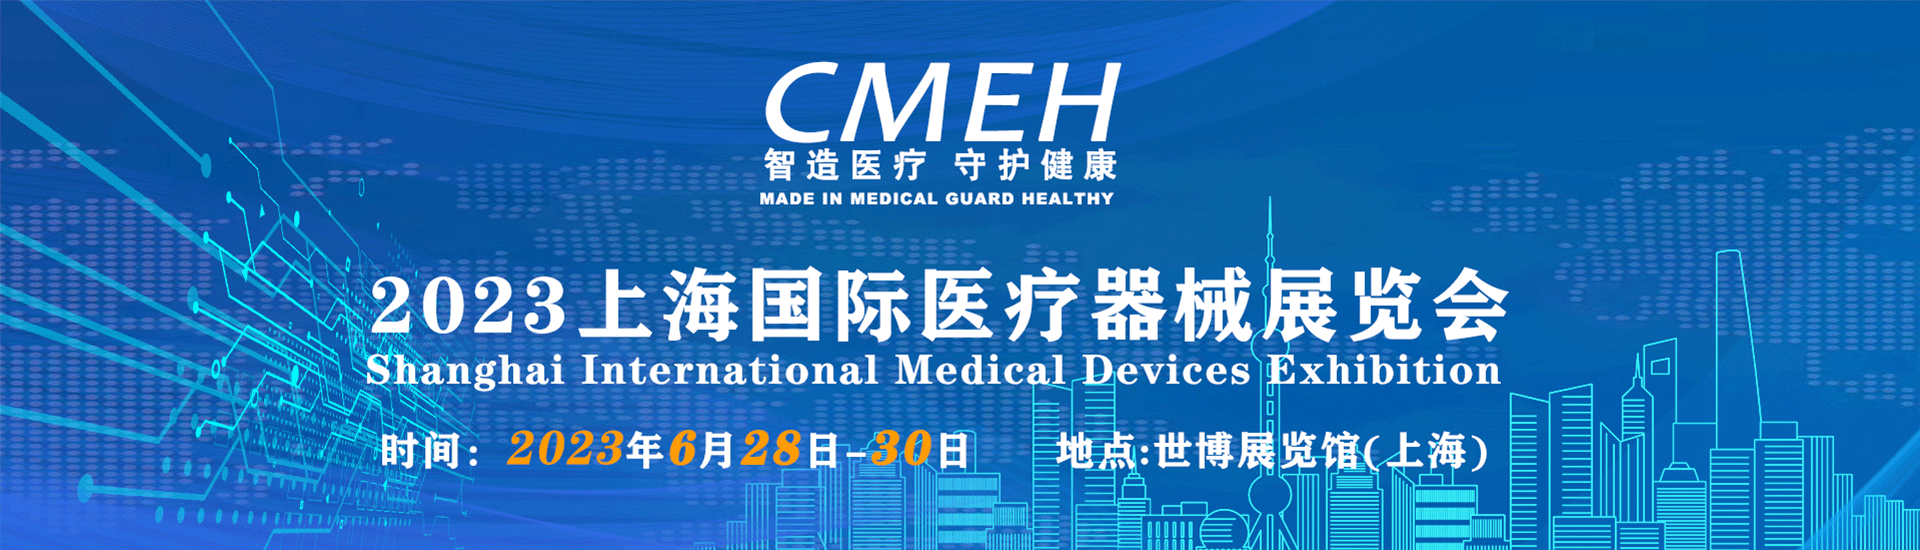 2023北京国际医疗器械展览会—参展预登记